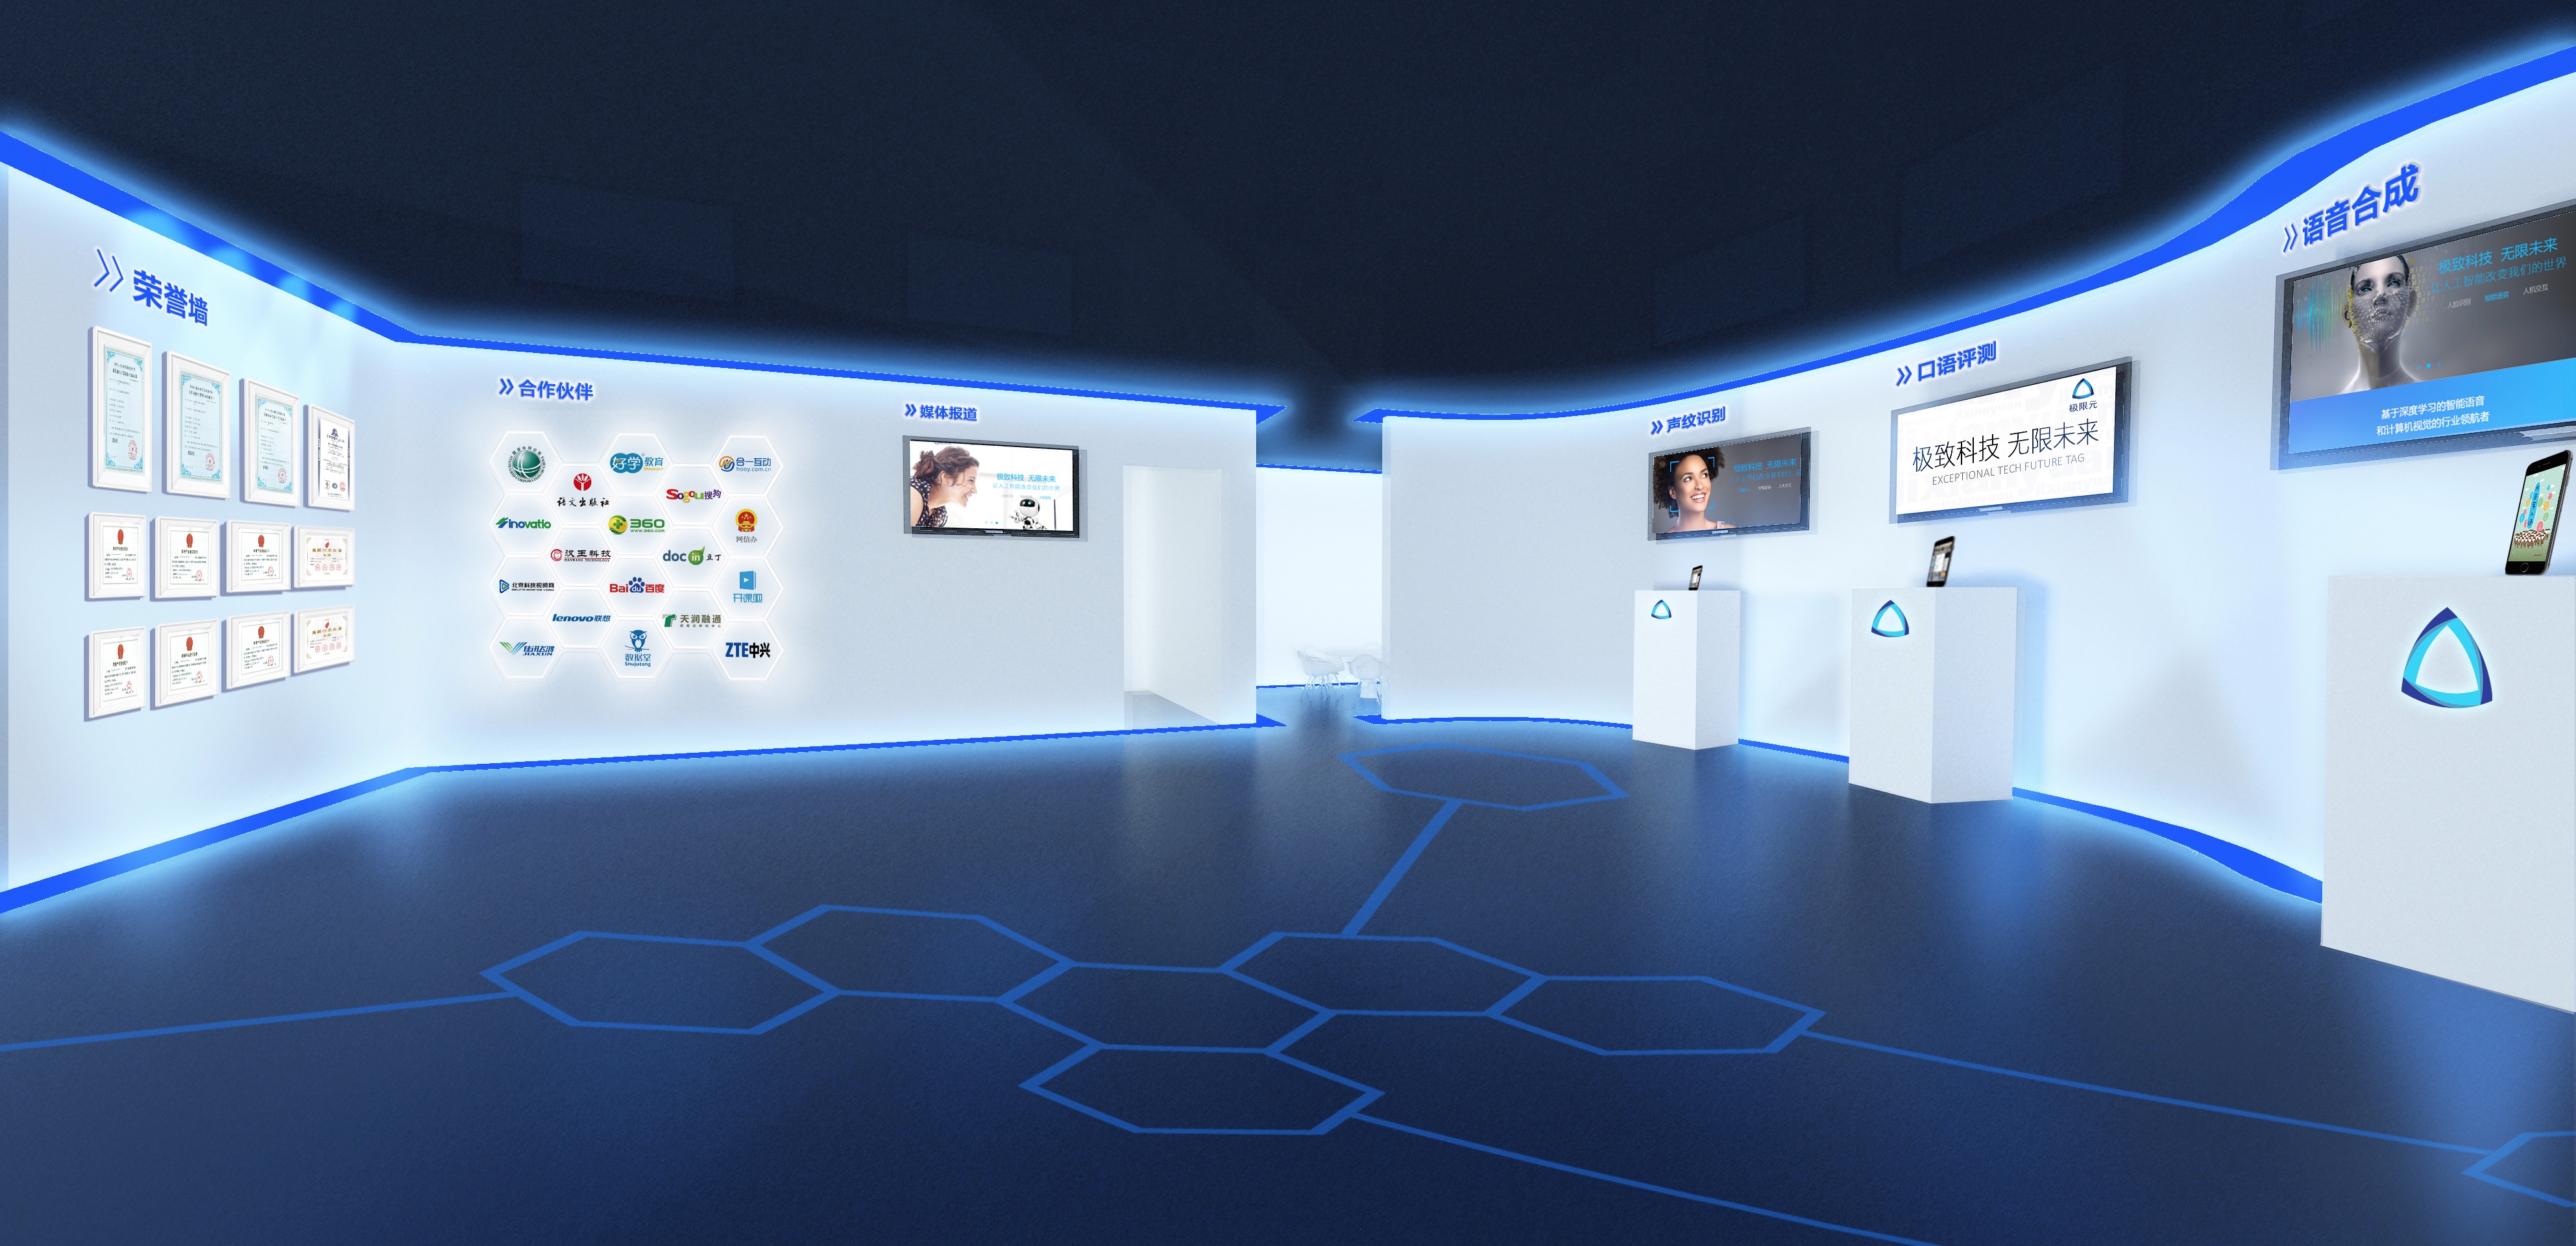 这是一个现代化的展览室，蓝色主题，墙上展示屏幕和海报，地面有六边形图案，整体设计科技感强。